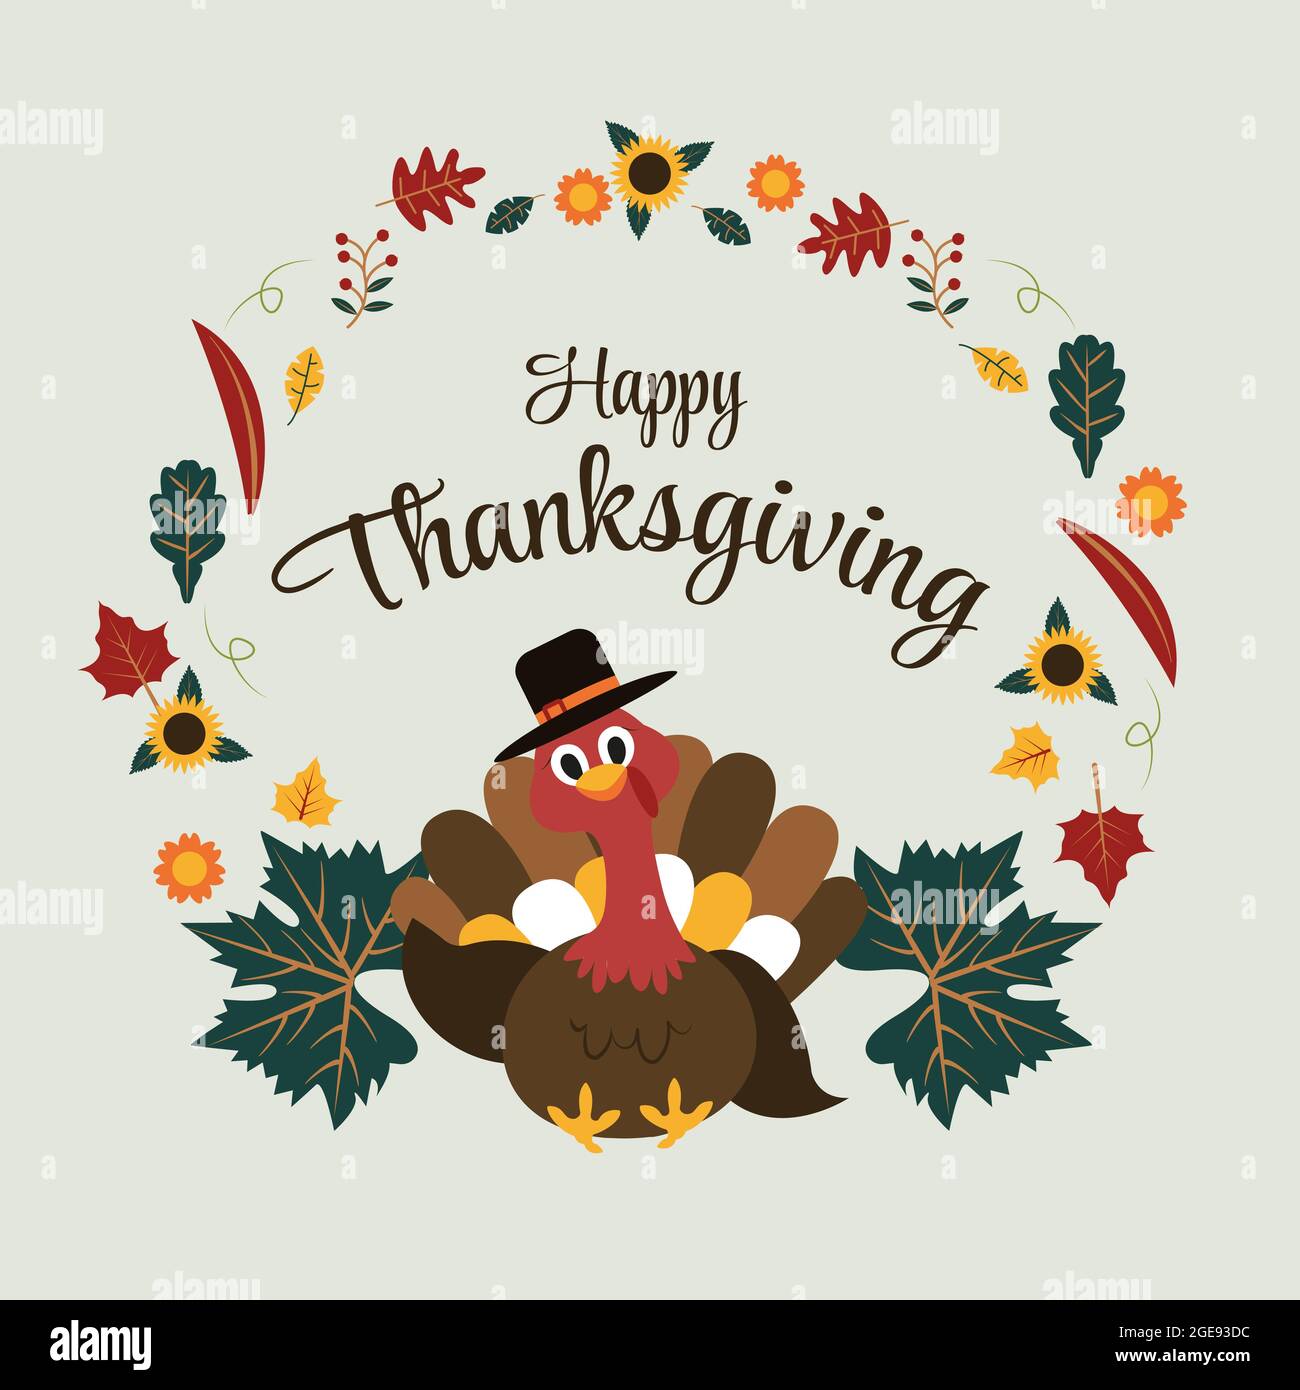 Turkey Happy Thanksgiving Day Autumn Fall Season Flat Illustration Stock Vector